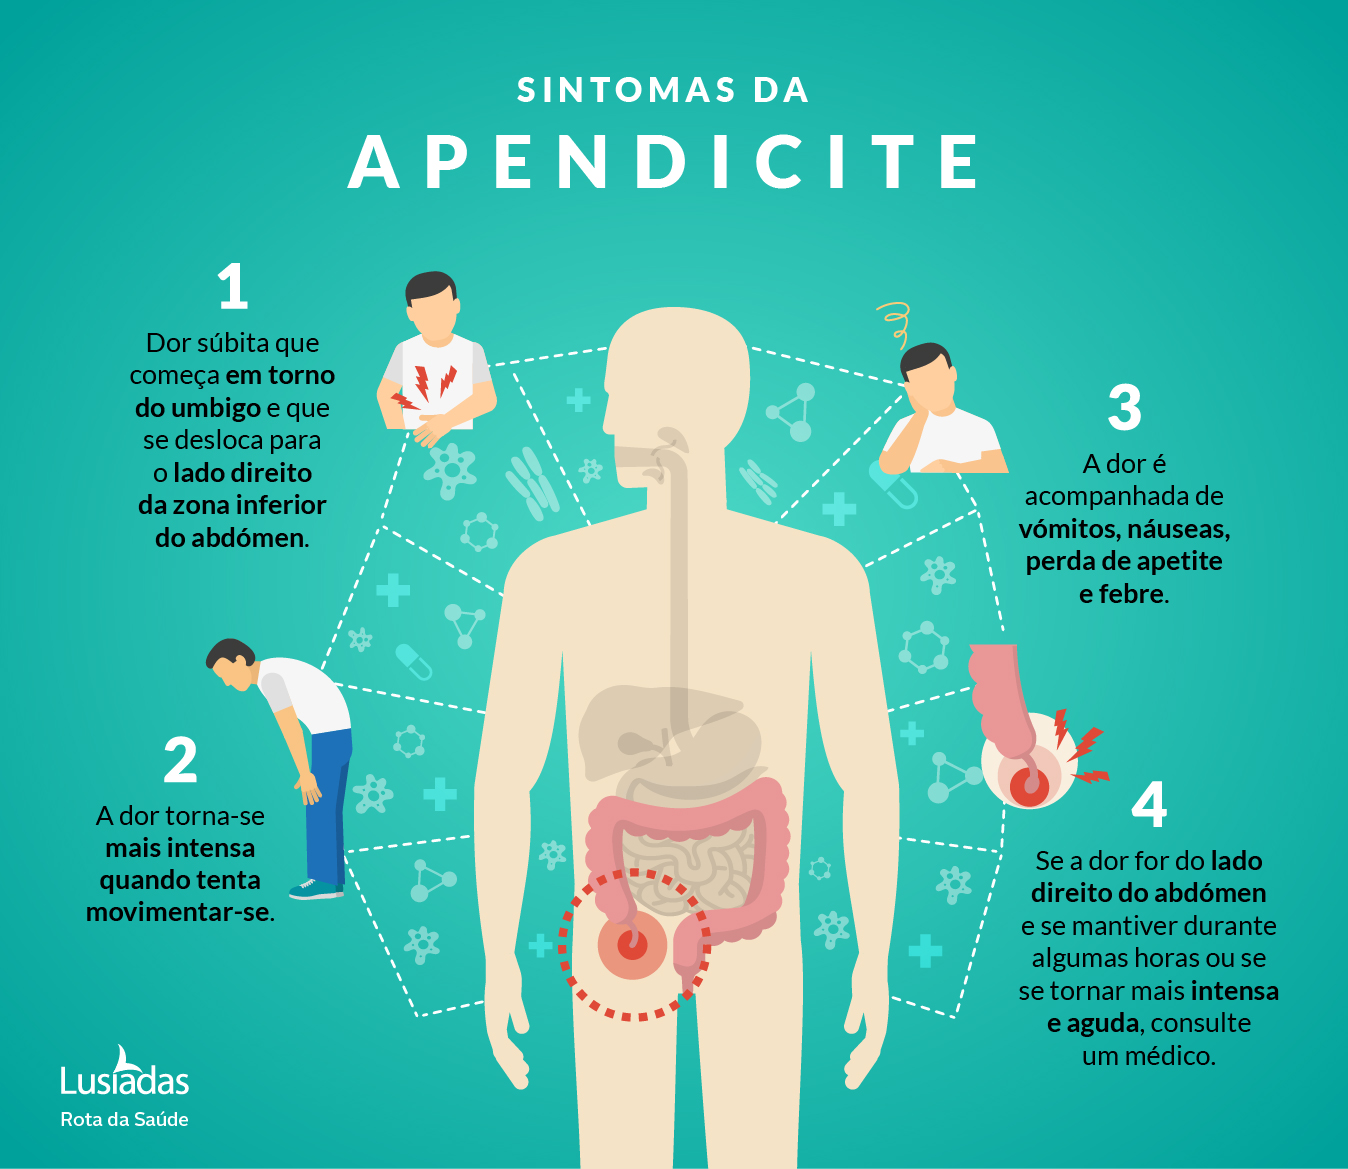 Quais os sintomas de apendicite?